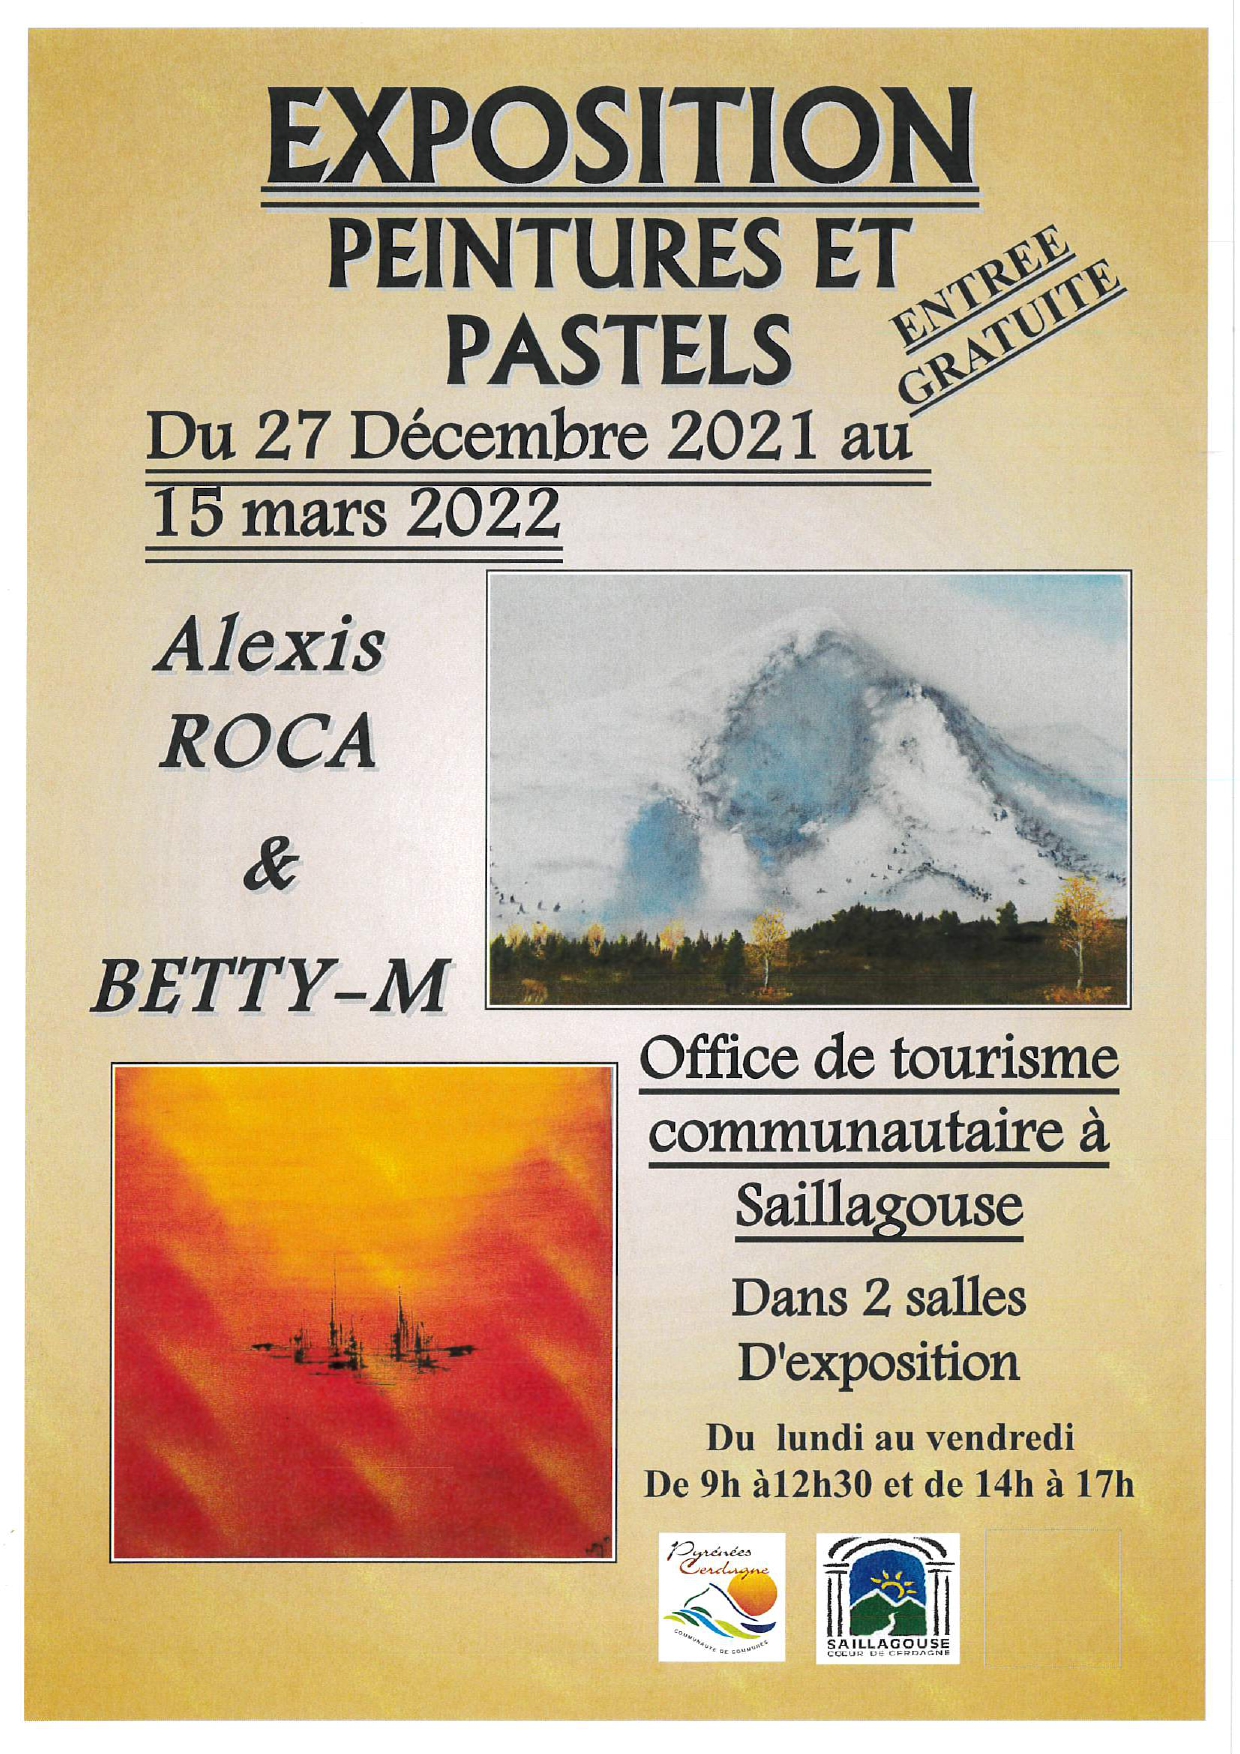 Exposition peintures et pastels-Mairie de Saillagouse